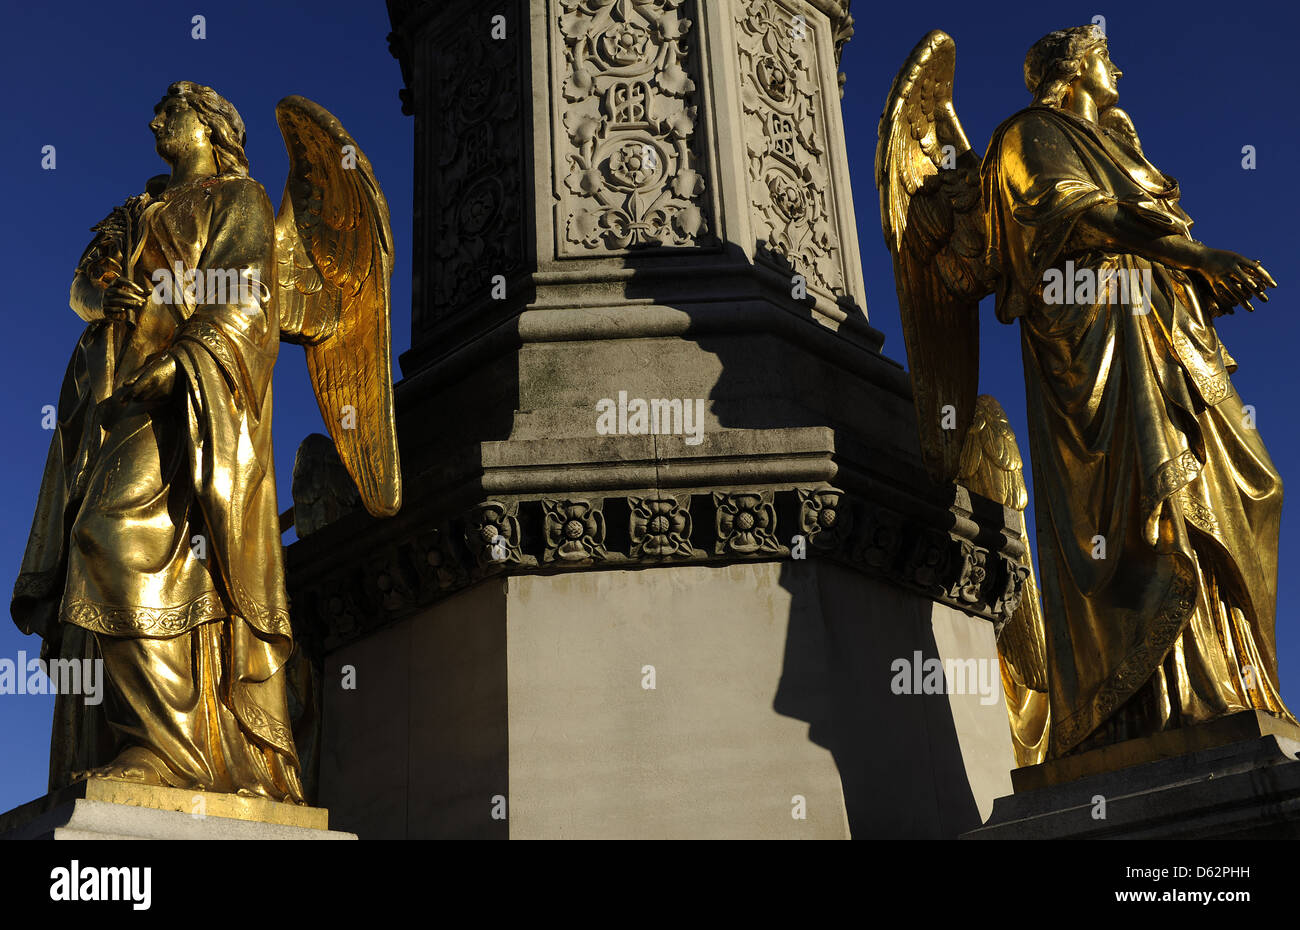 La Croazia. Zagabria. Santa Maria di colonna con angeli e fontana. Due dei quattro angeli dorati sul piedistallo. Kaptol Square. Foto Stock